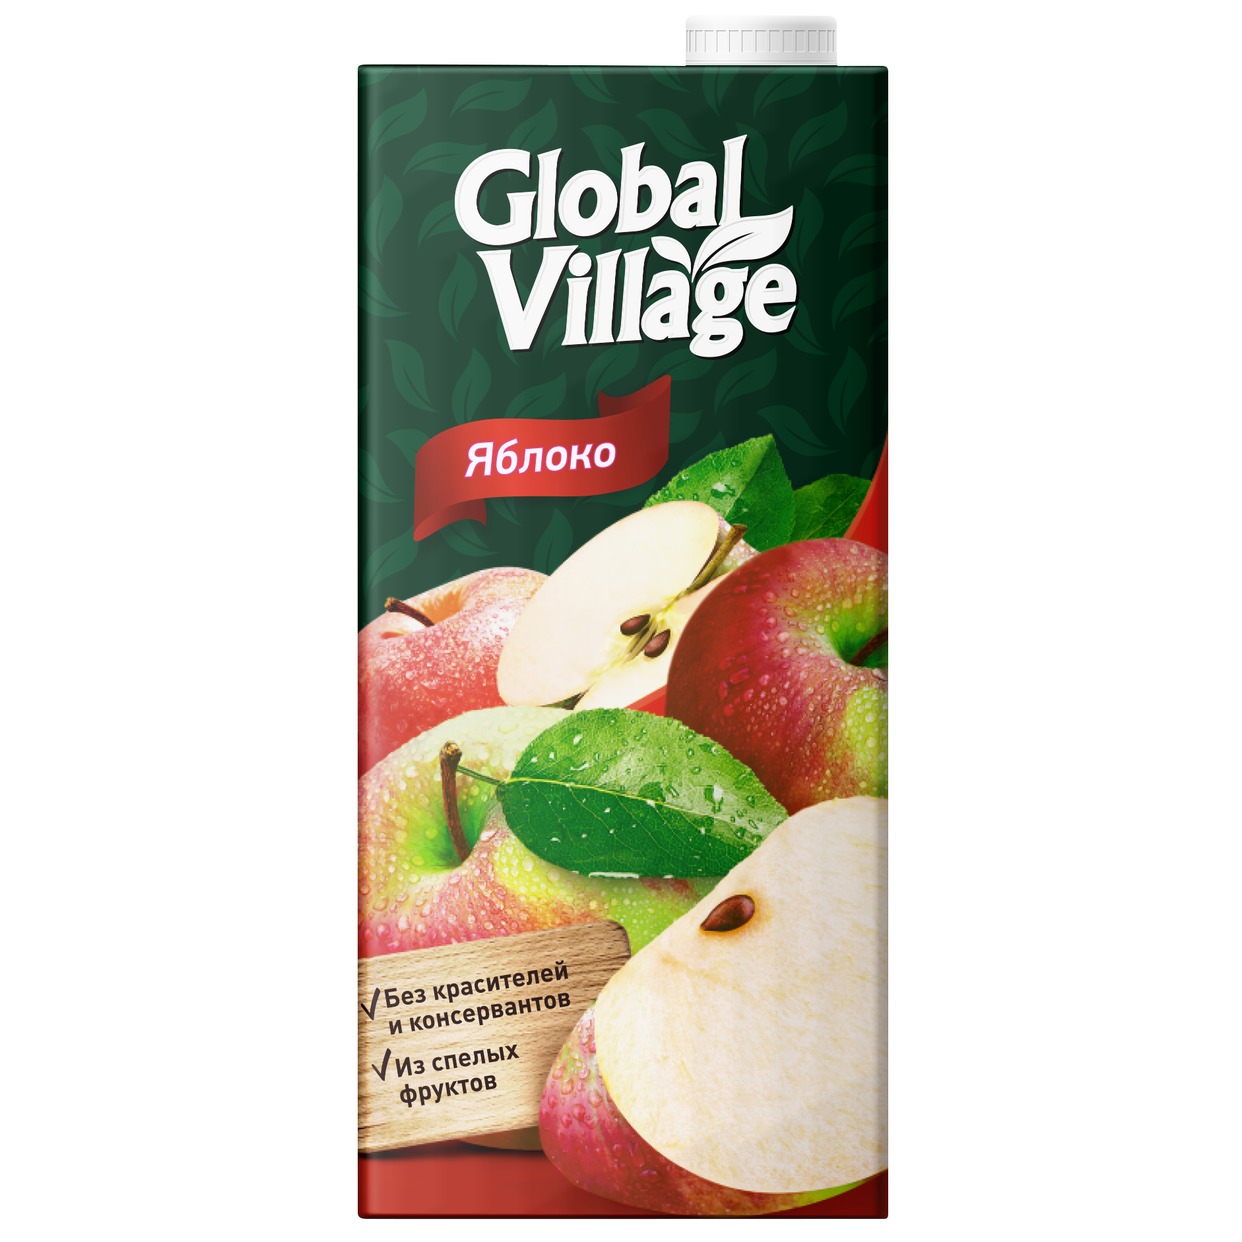 GLOBAL VILLAGE Нектар яблочный, 0,95л по акции в Пятерочке